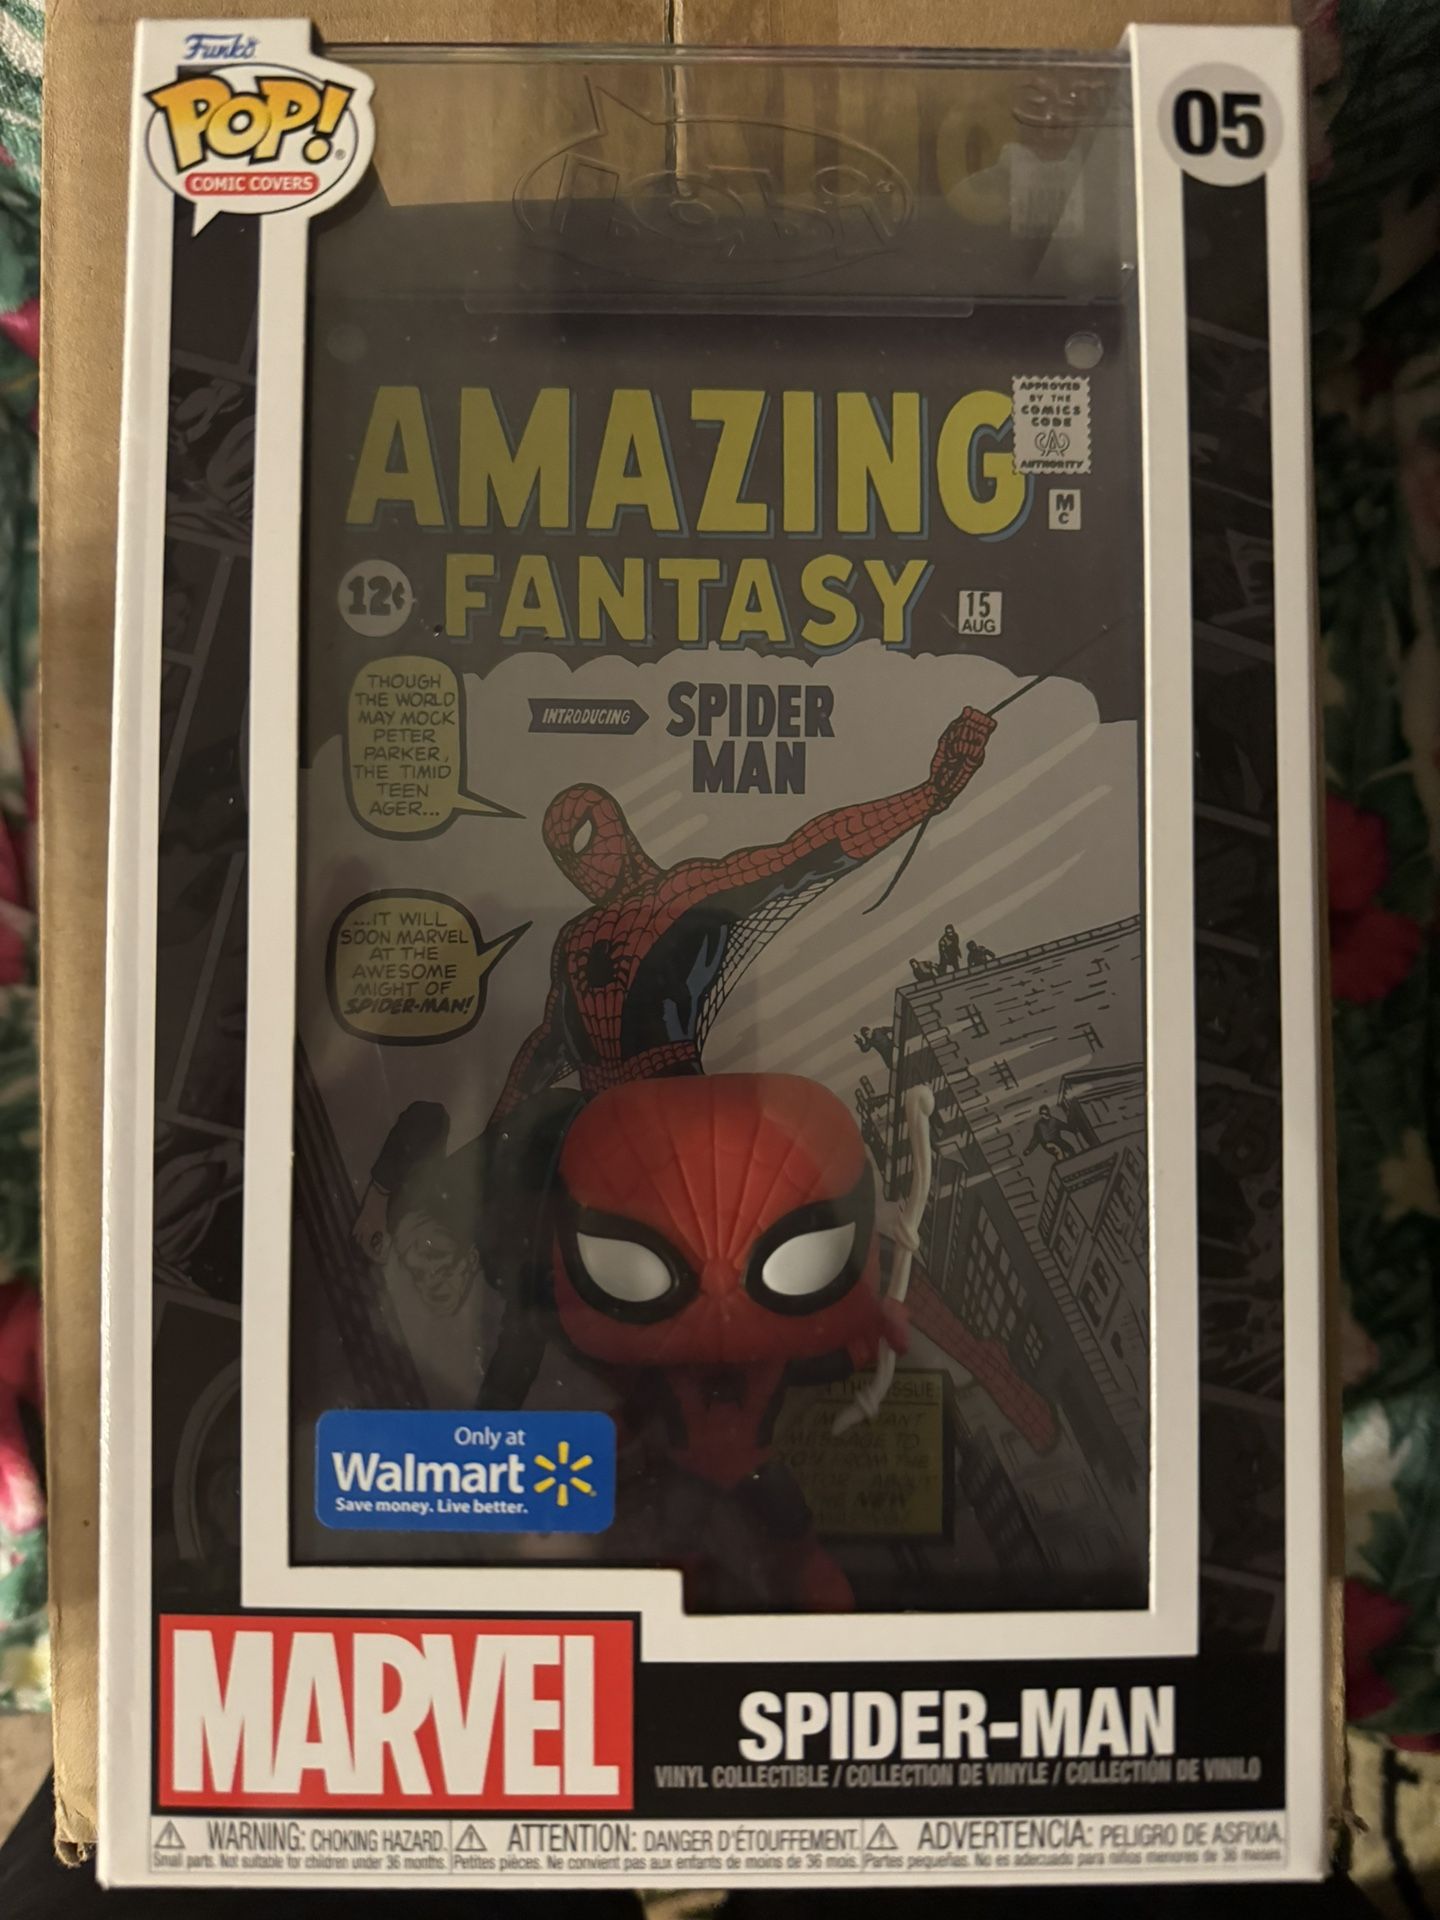 Spider-Man Walmart Exclusive Funko comic cover 05